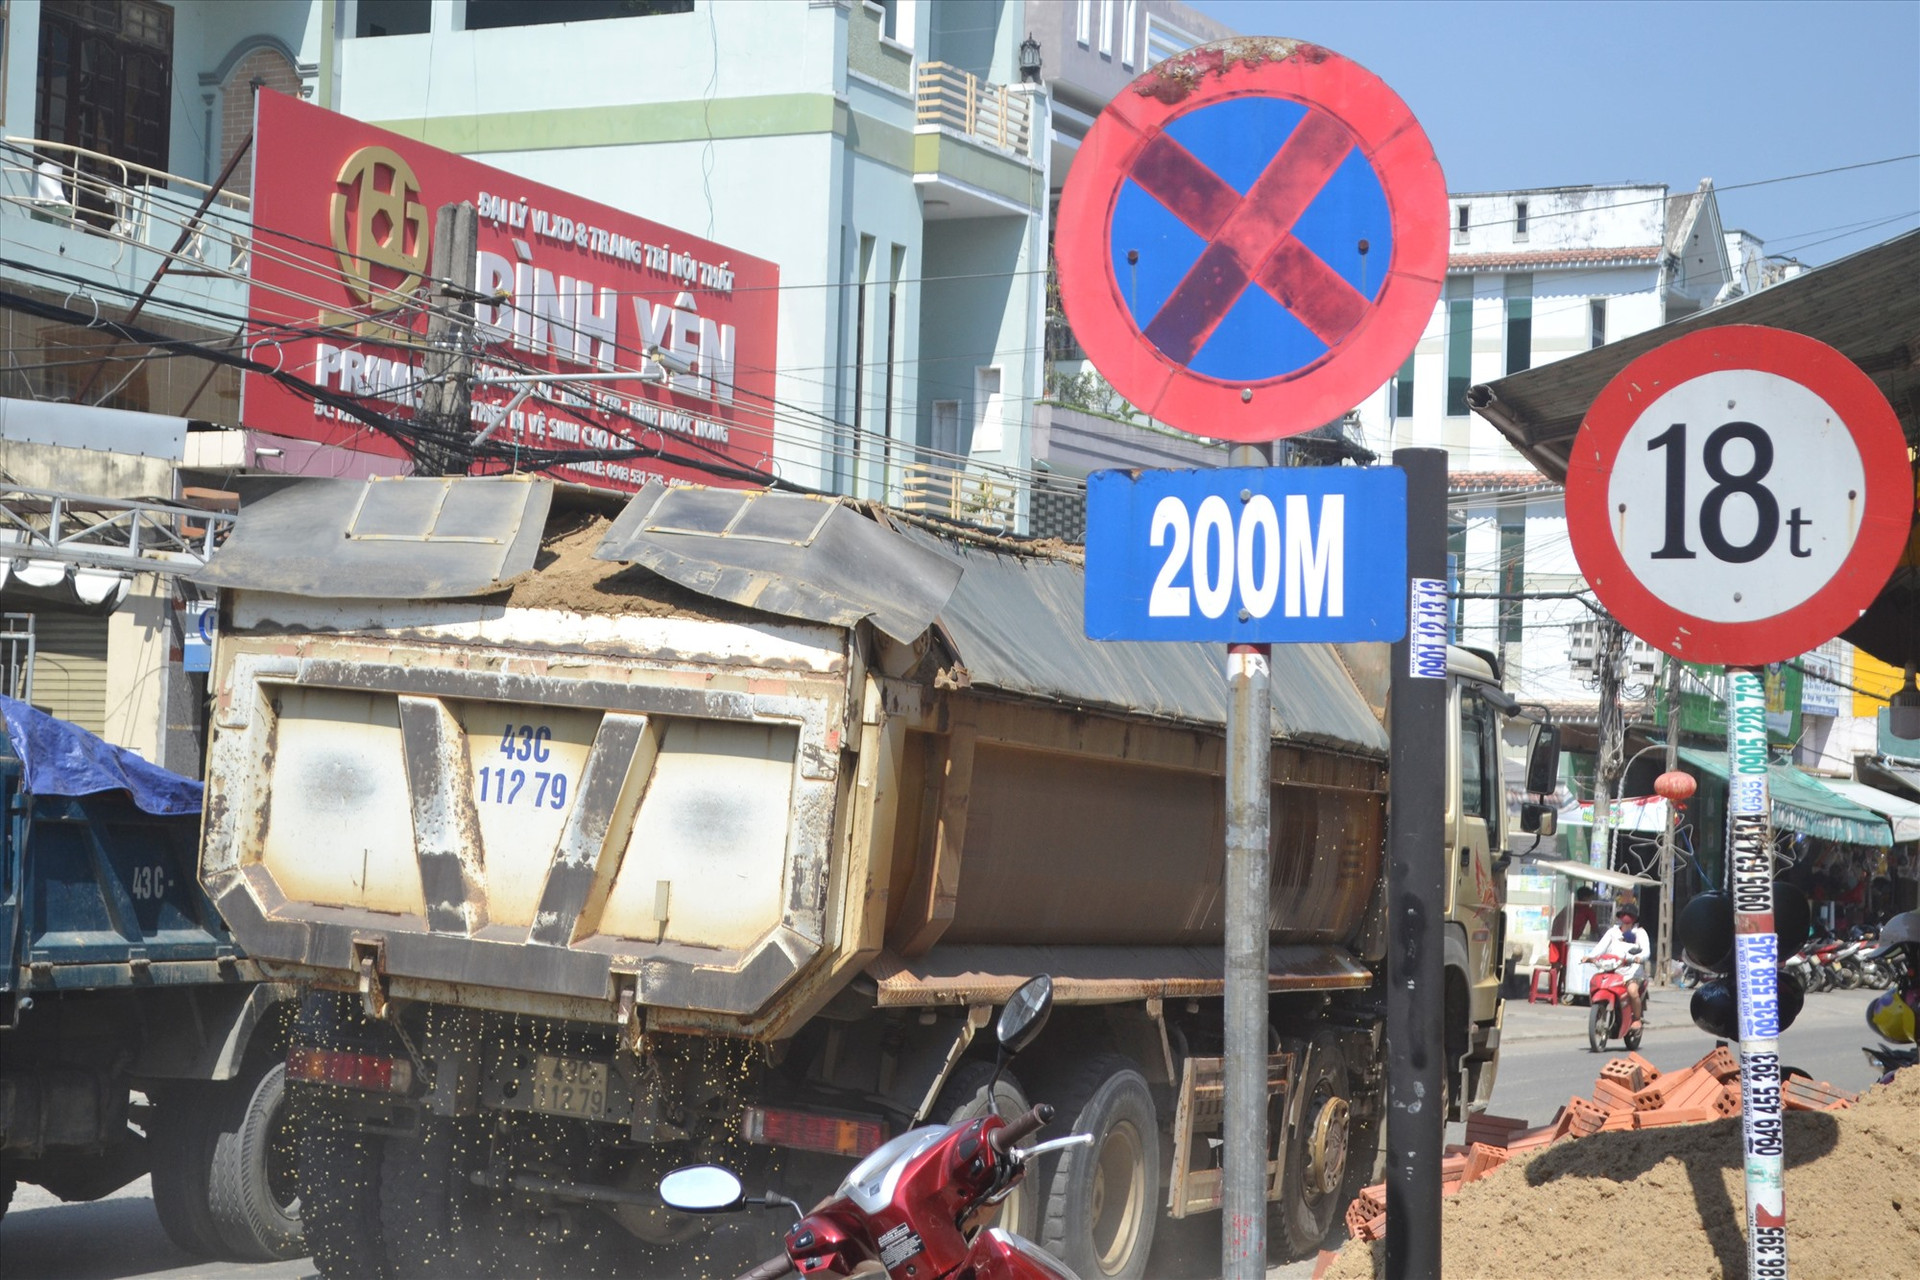 Bất chấp biển báo hạn chế tải trọng, tài xế xe tải chở cát ngang nhiên lưu thông trên đường Huỳnh Ngọc Huệ vào trưa ngày 15.2. Ảnh: N.B